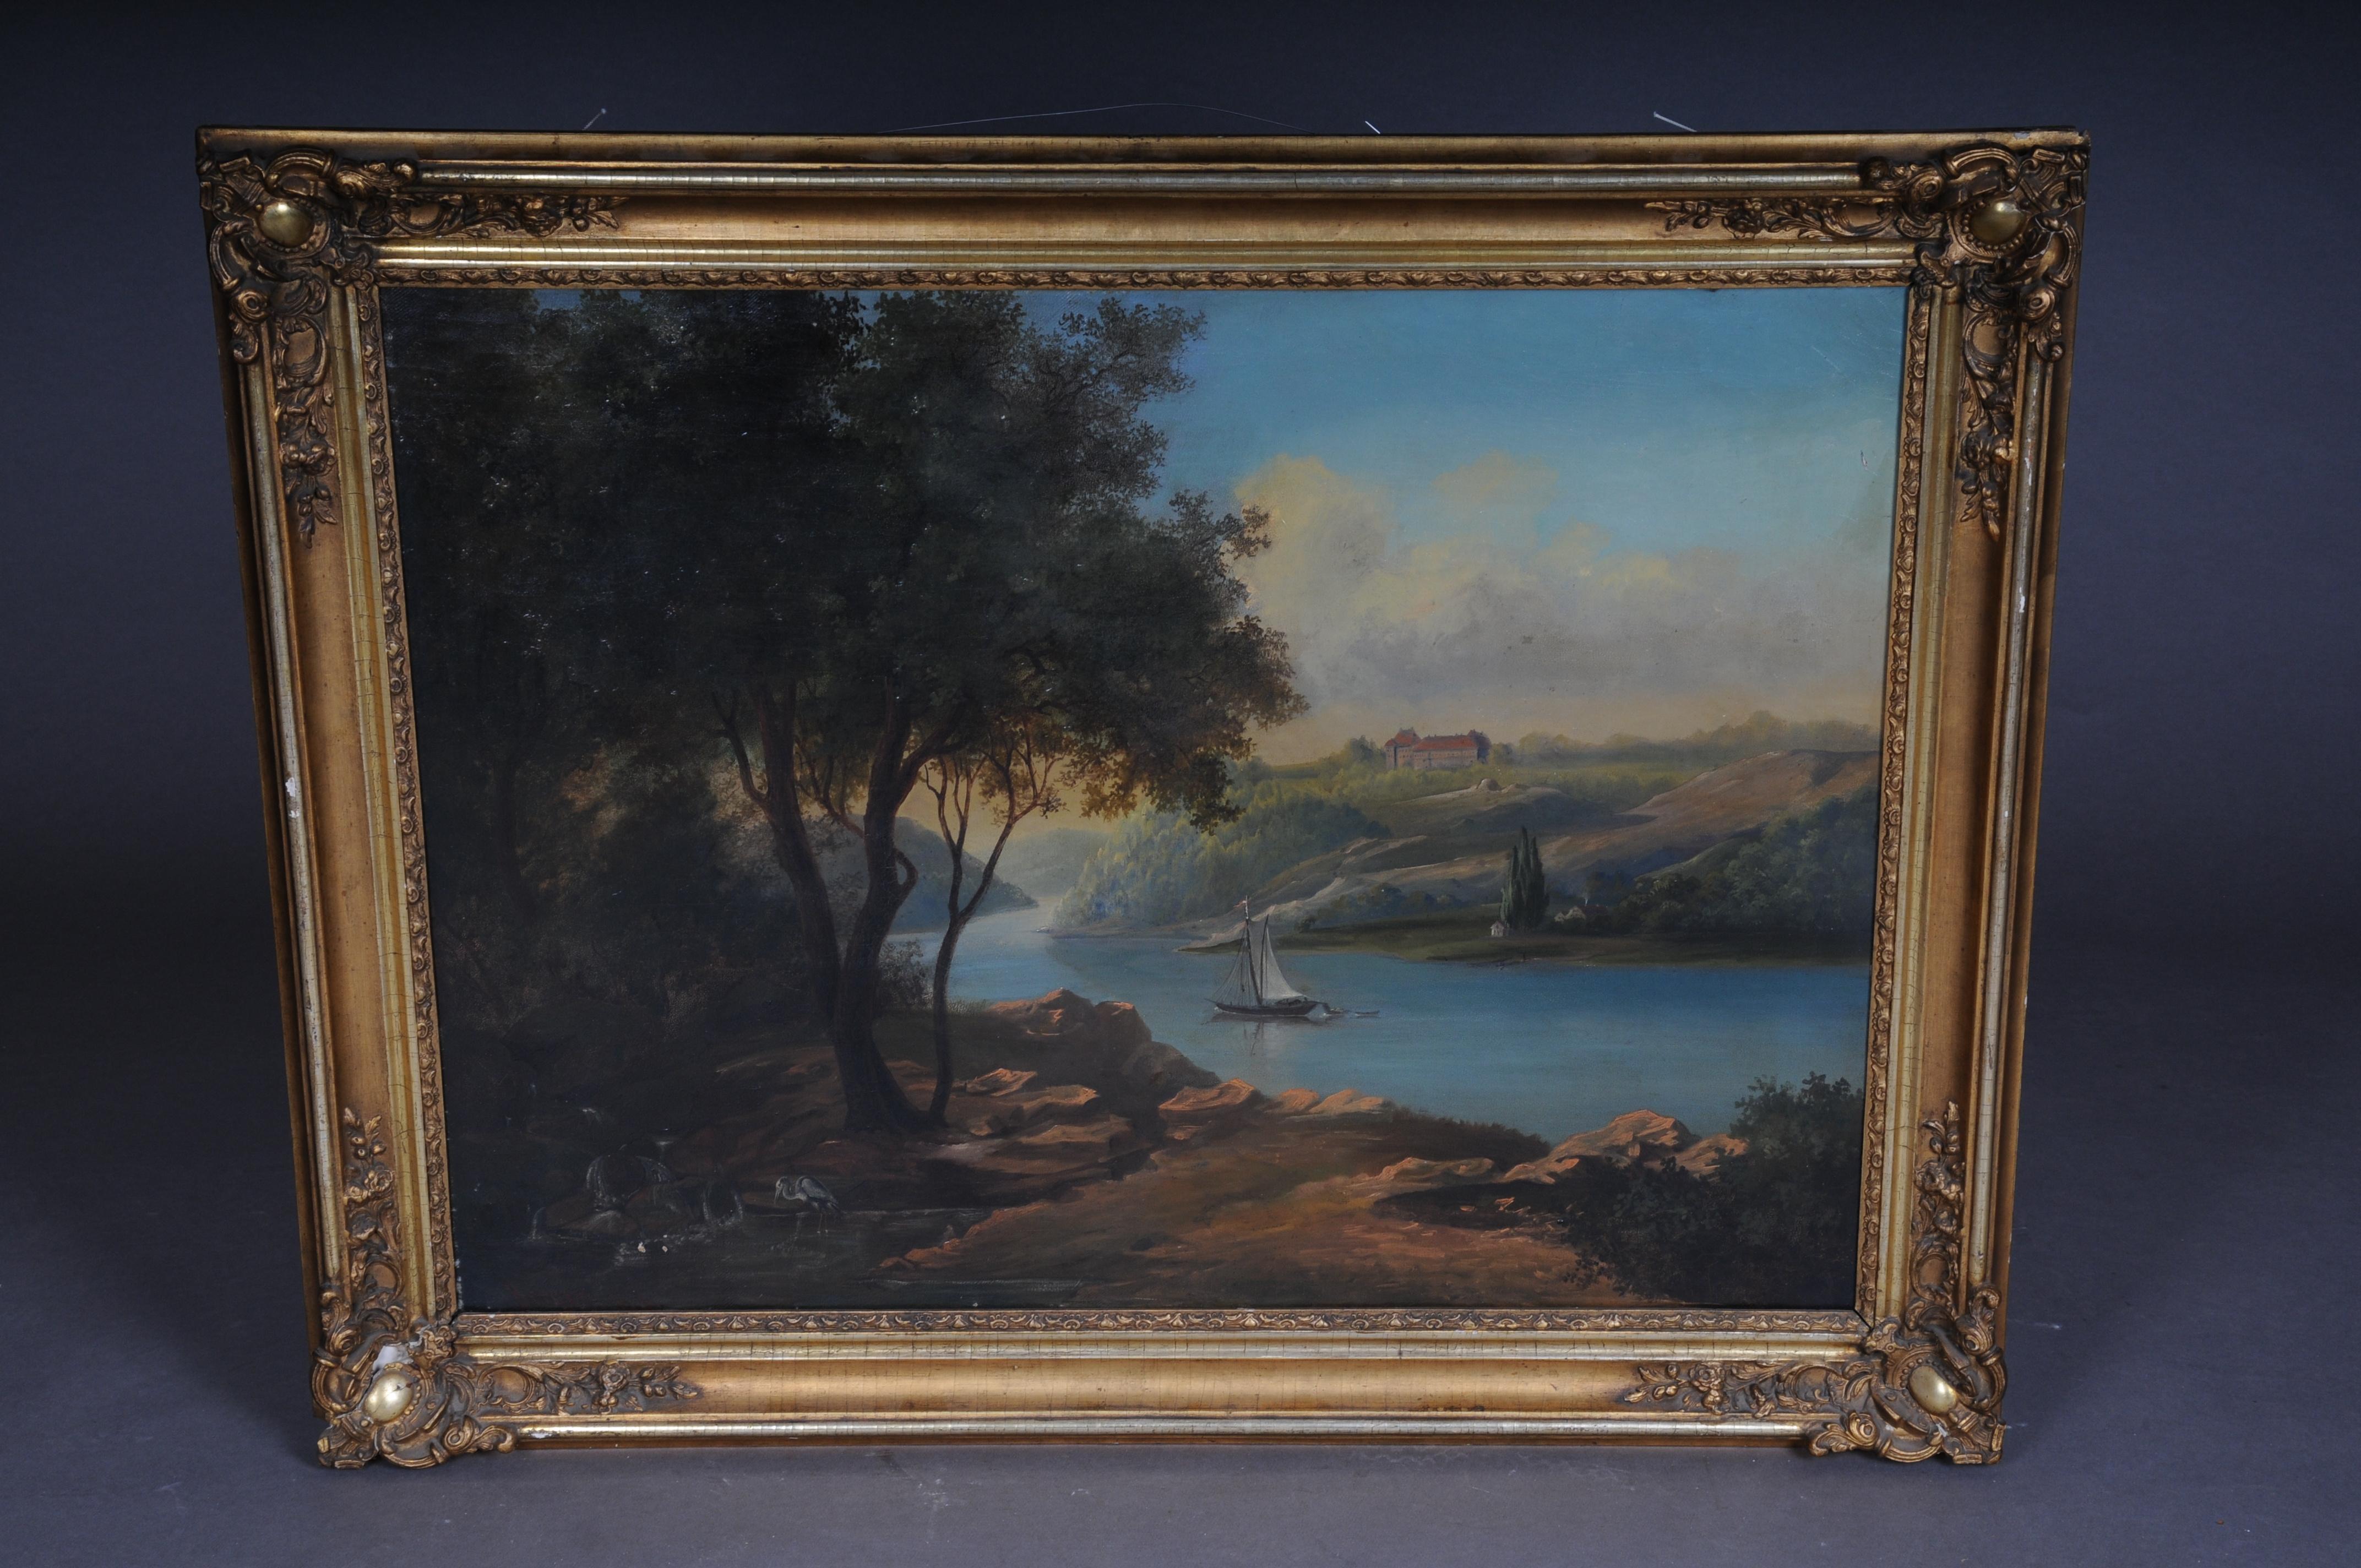 Ölgemälde idyllische Flusslandschaft/romantische Szene, 19. Jahrhundert

Fein gemaltes Öl auf Leinwand, das eine Flusslandschaft mit einem Segelboot unter einem strahlend blauen Himmel zeigt. In der Ferne ist ein Schloss zu sehen. Das Gemälde hat